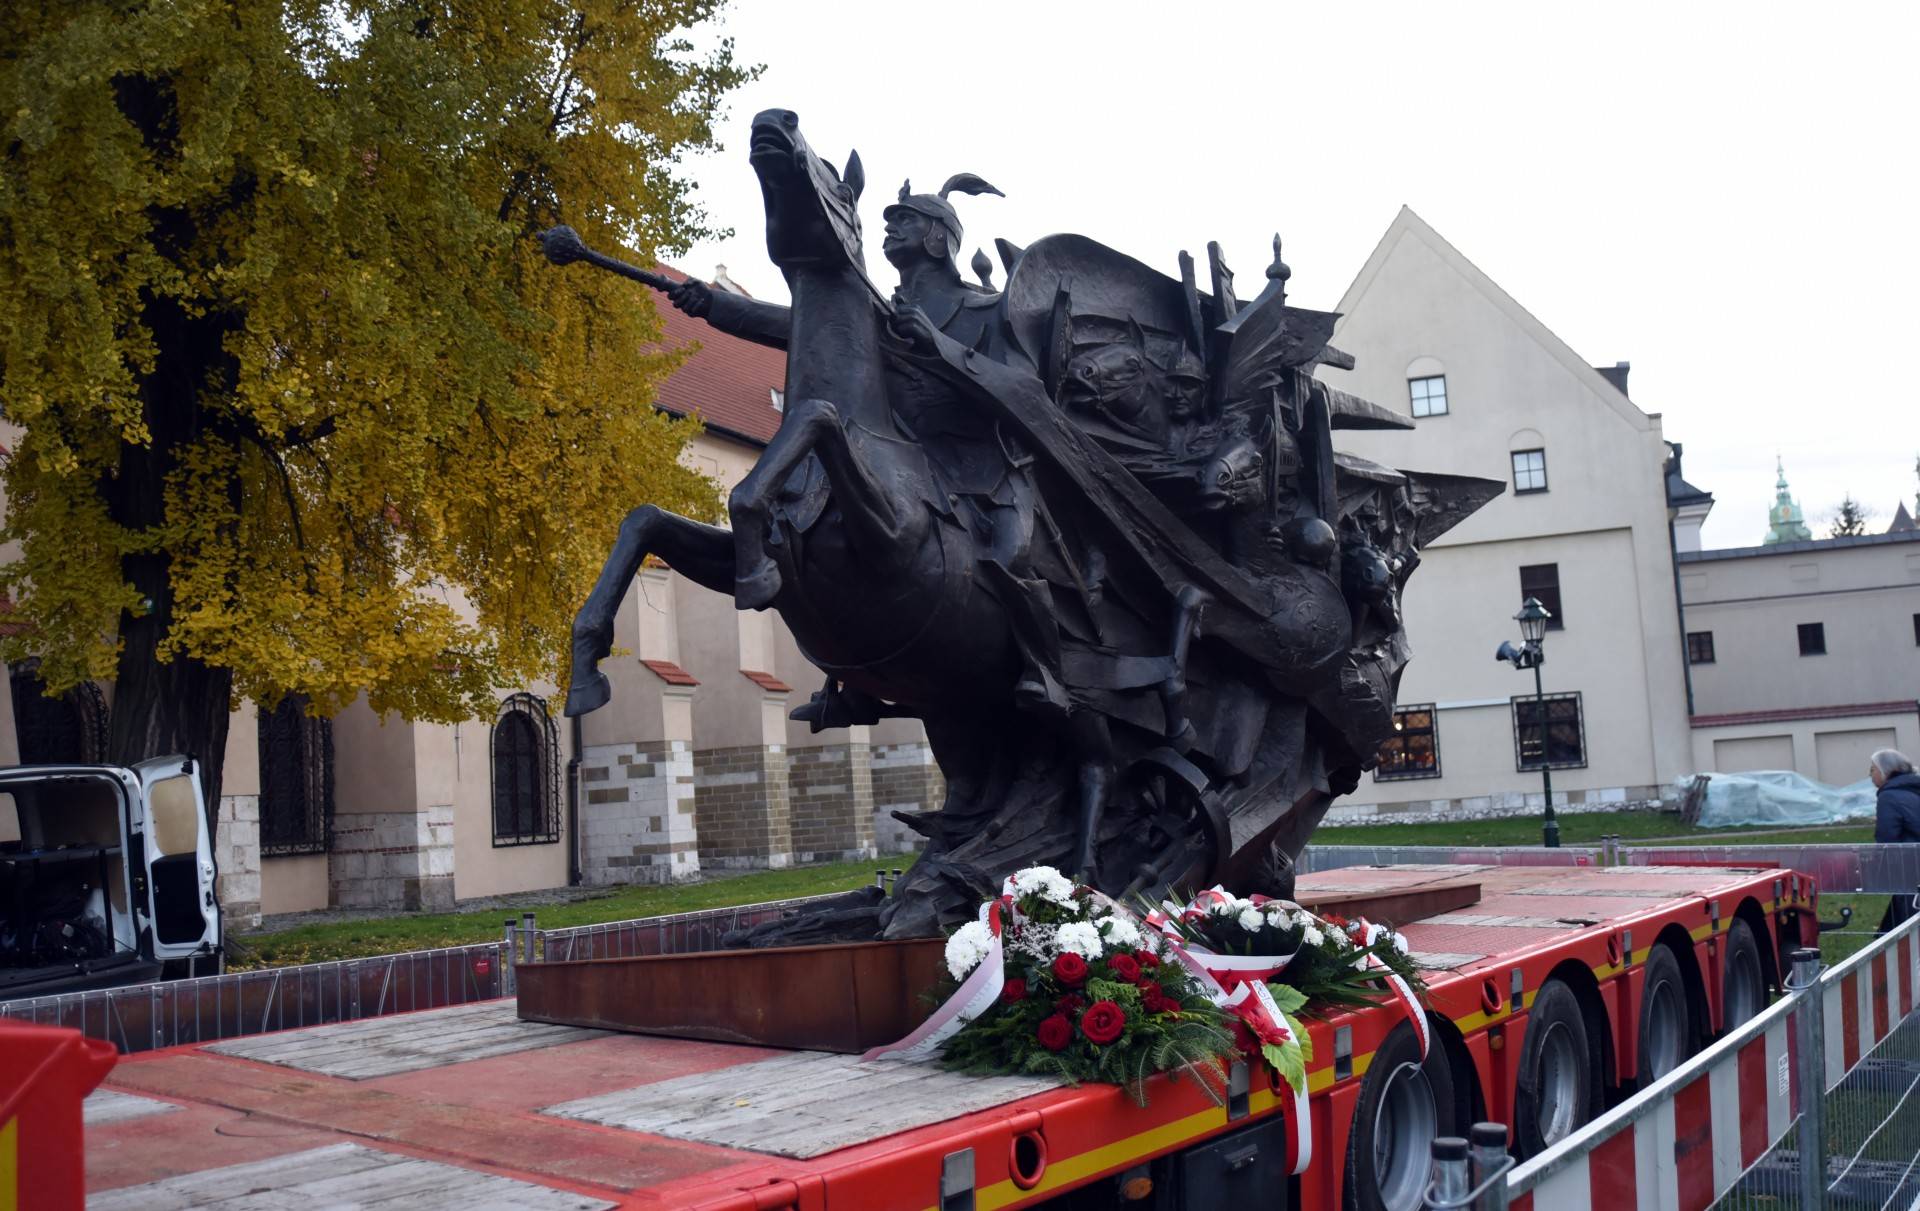 Pomnik Sobieskiego w Krakowie na lawecie, Wiedeń go nie chce